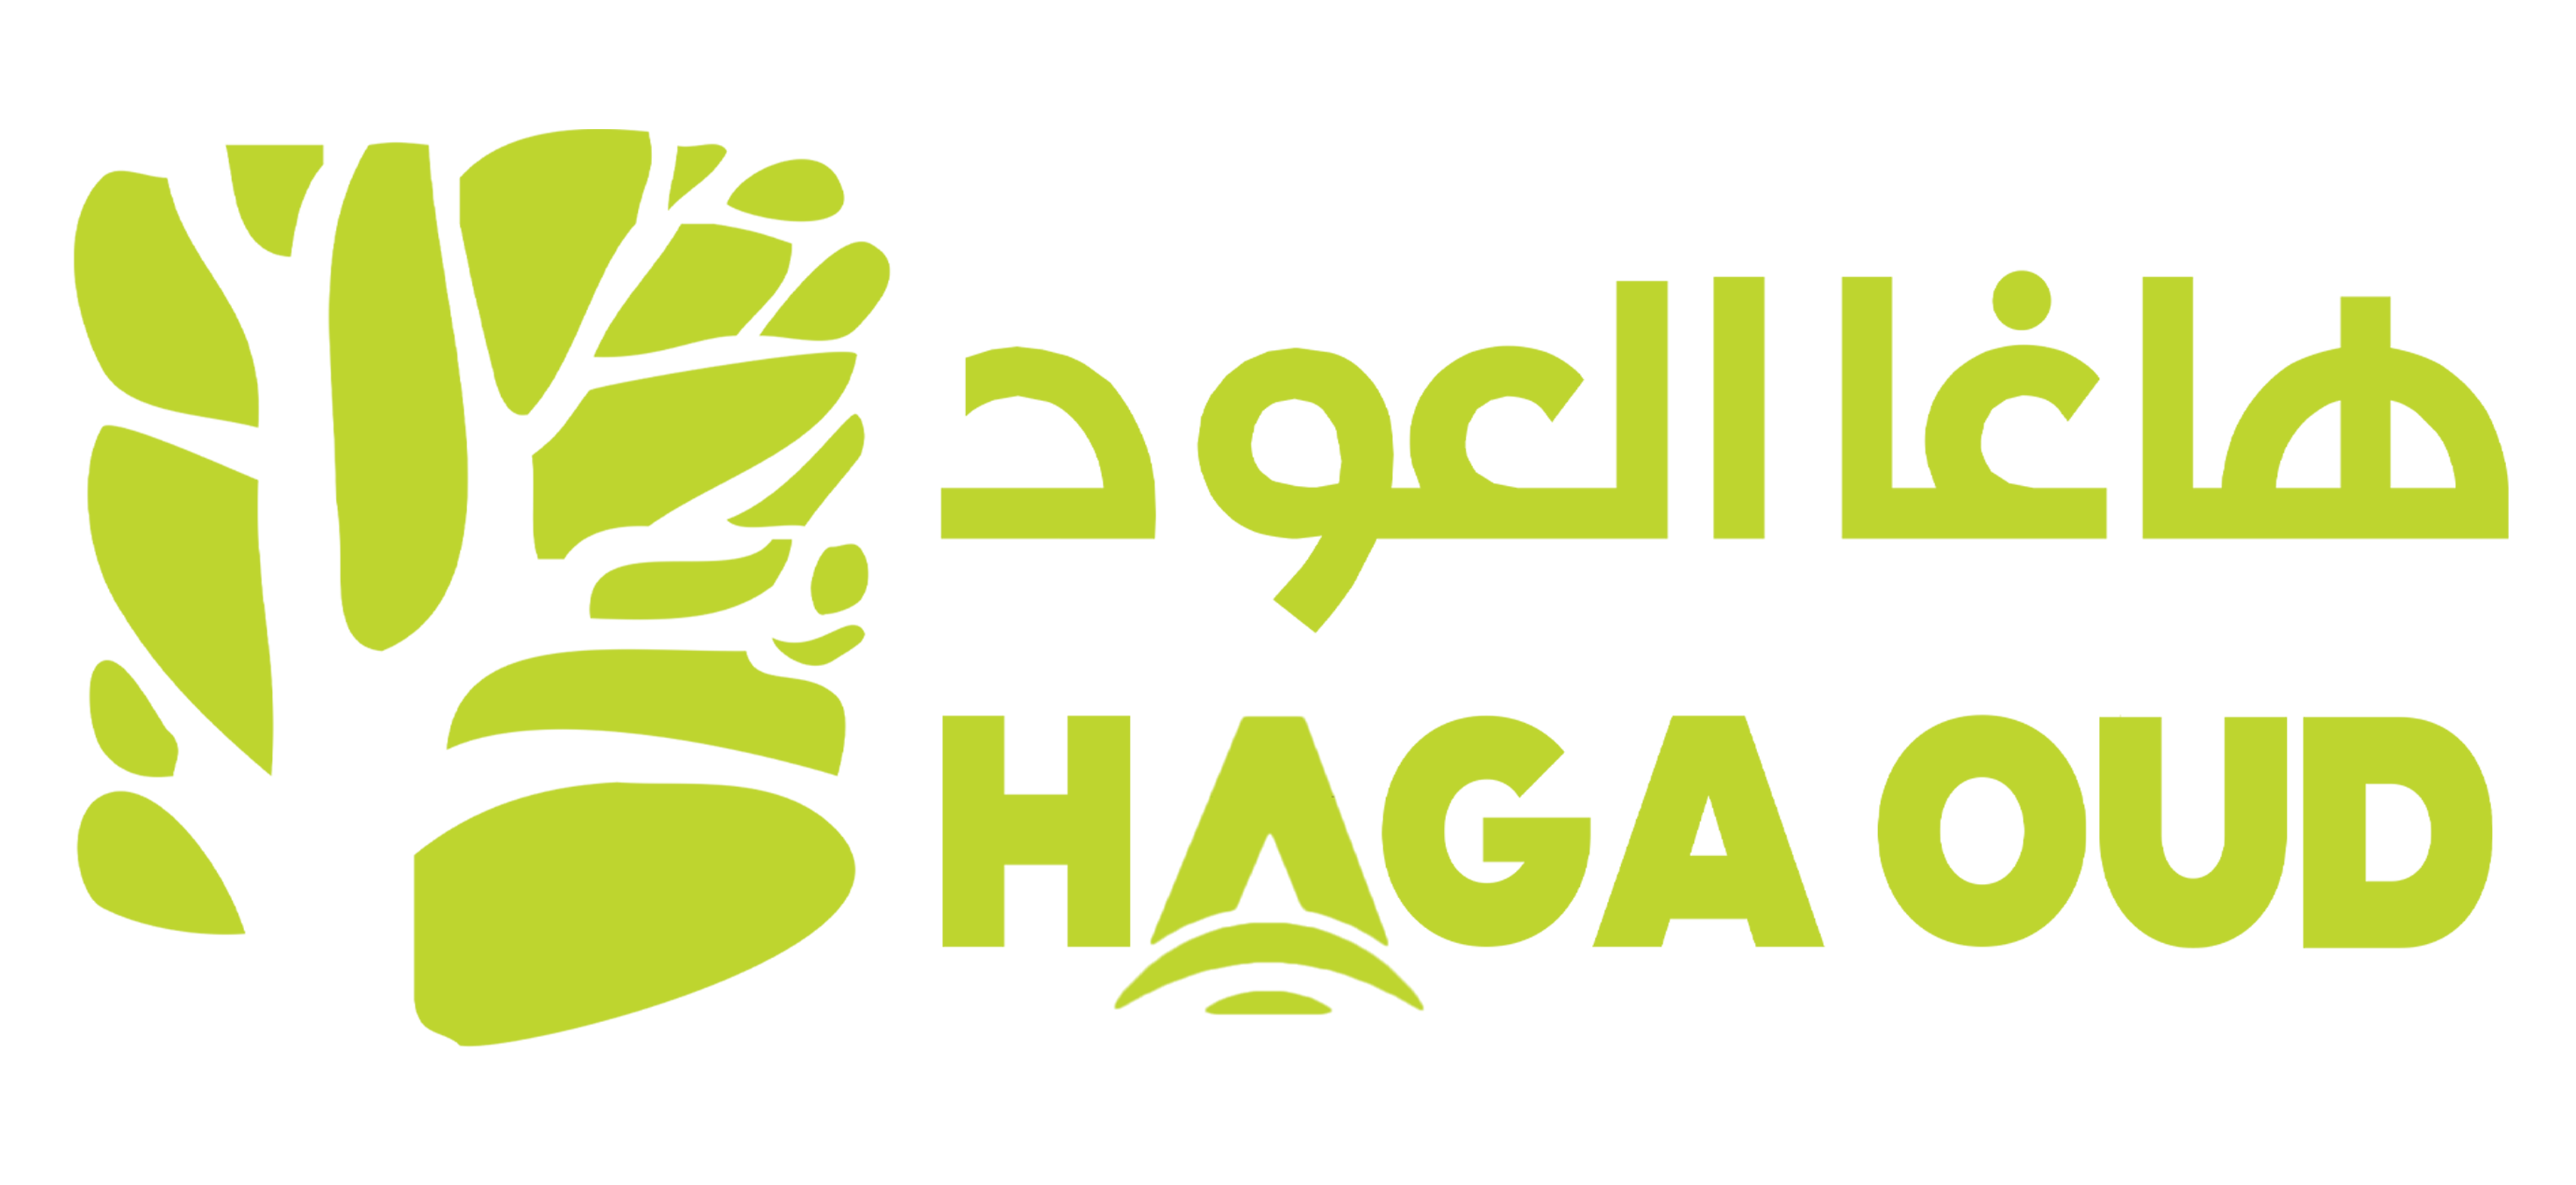 HAGA Oud - Hoang Giang Agarwood Ltd.